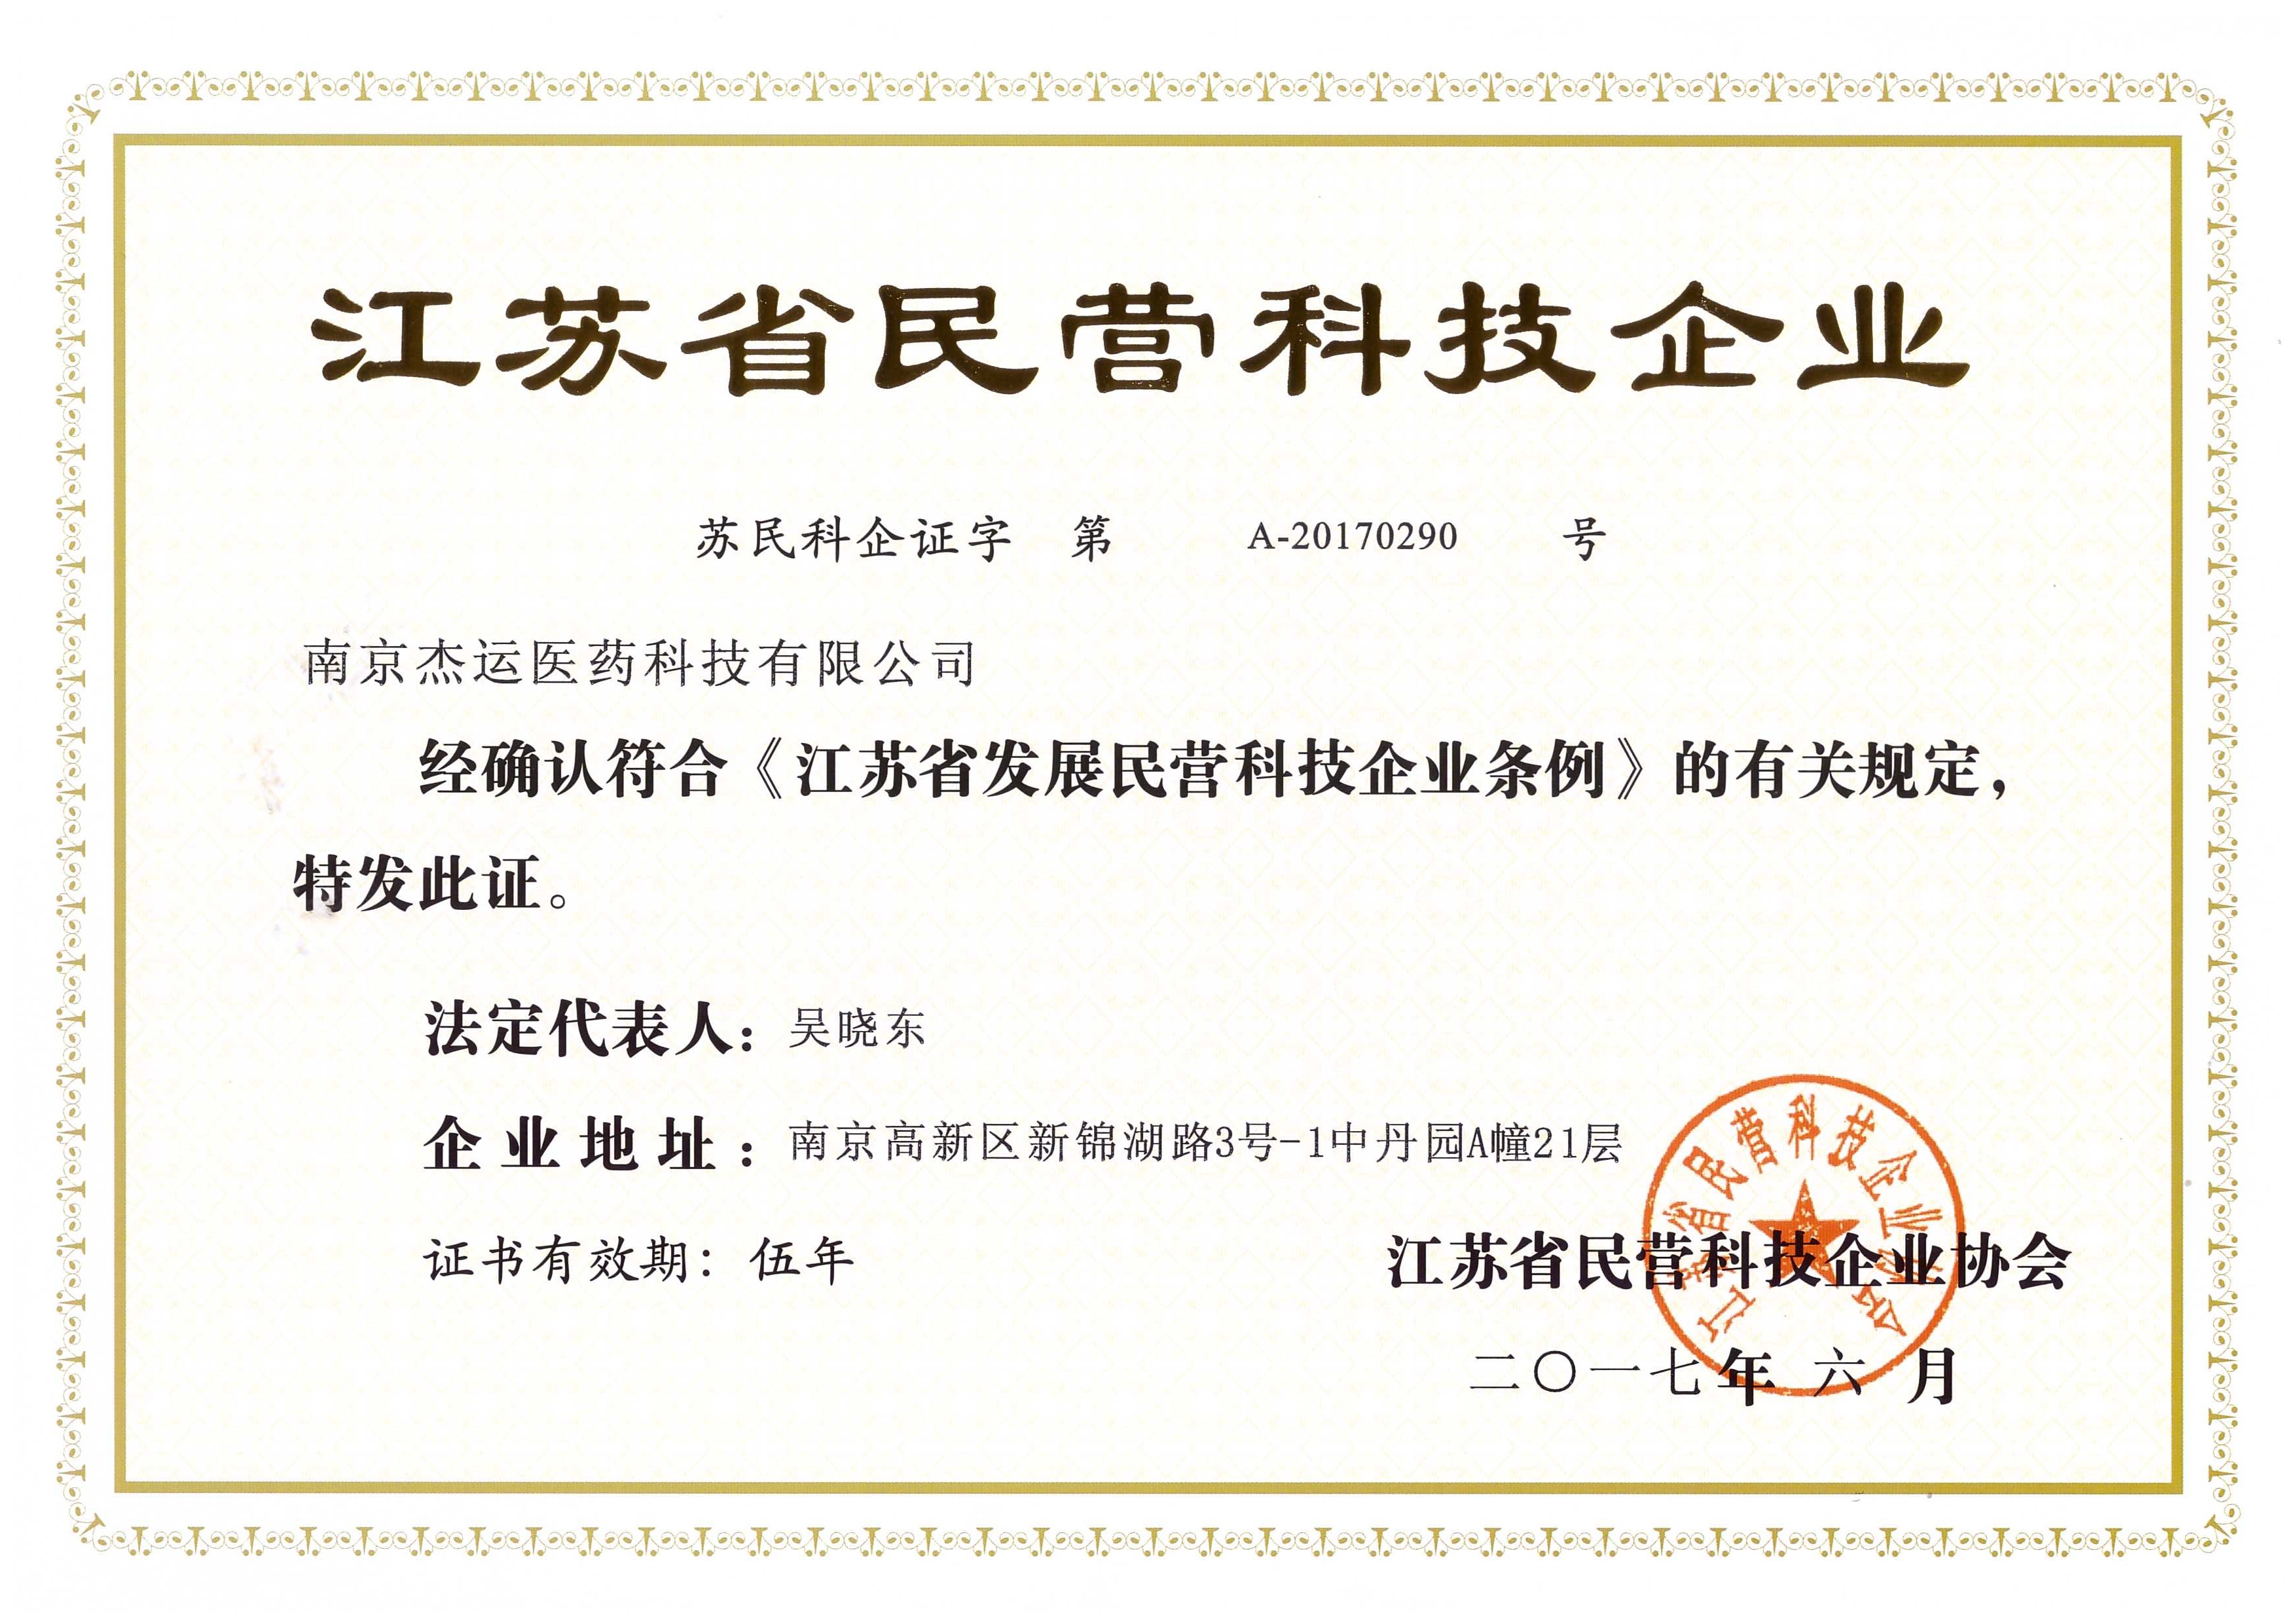 我司成功被授予江苏省民营科技企业